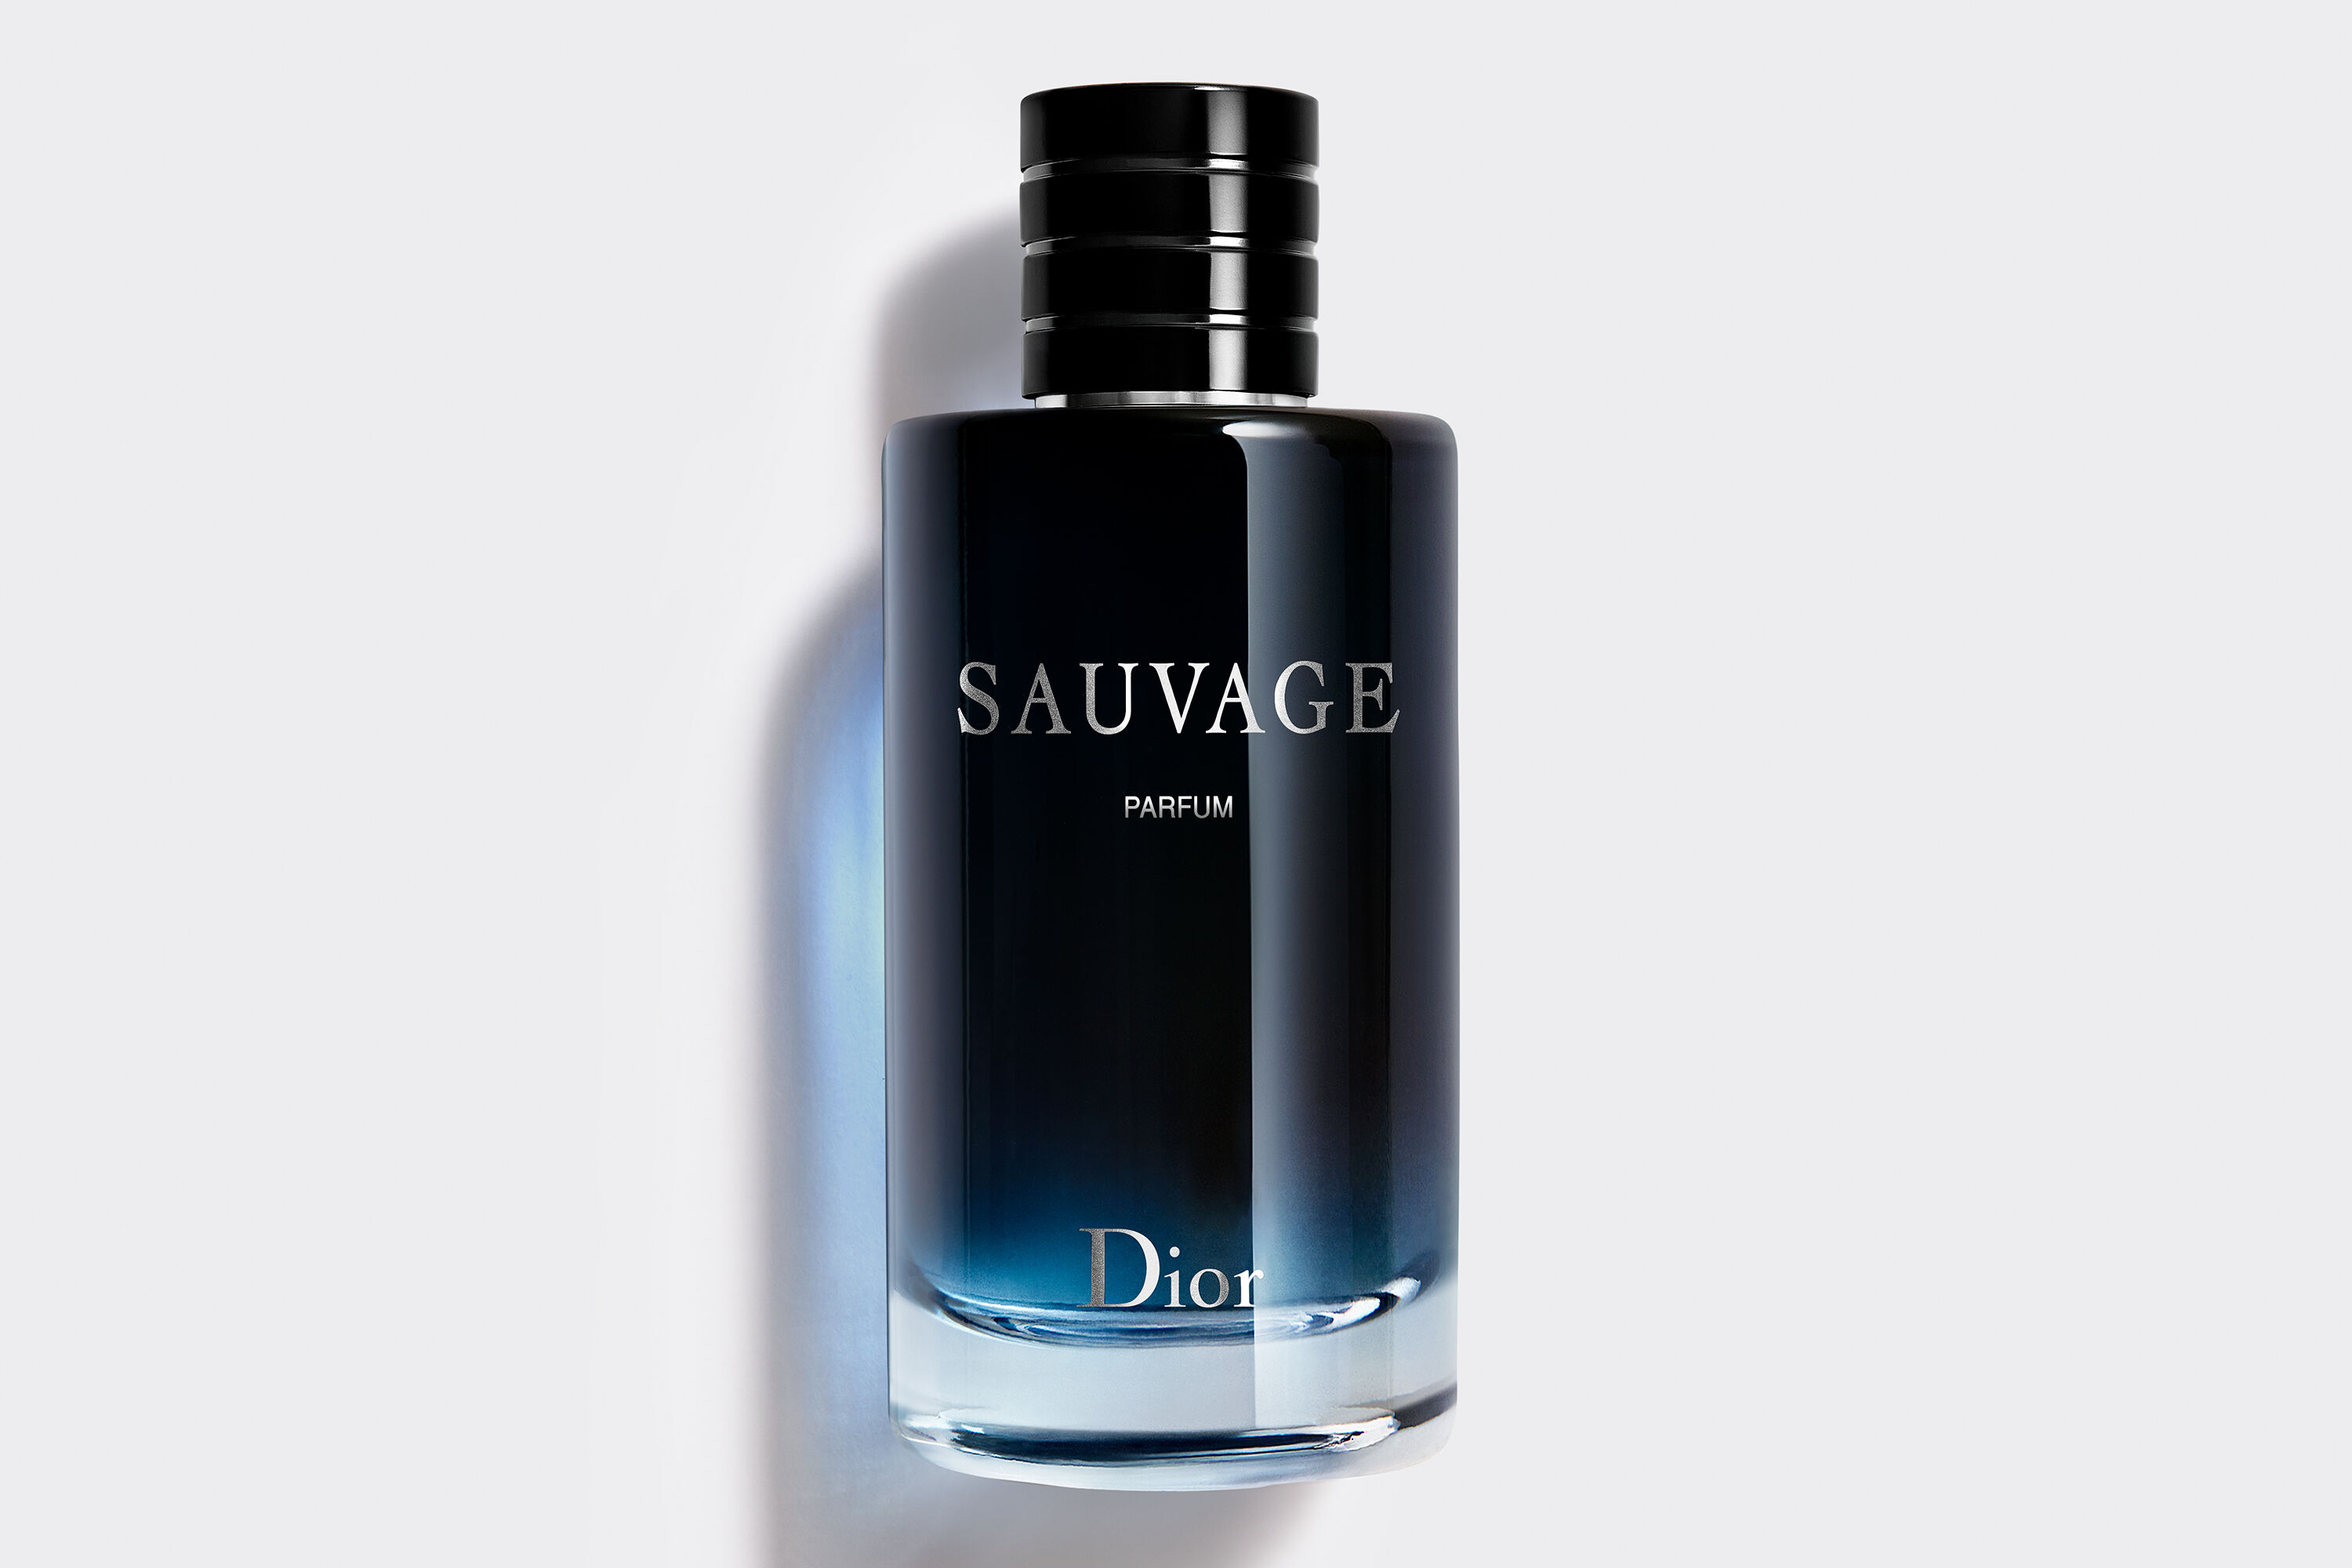 želiezka predajca opakovať dior sauvage parfum 60 materský prášok nesúlad